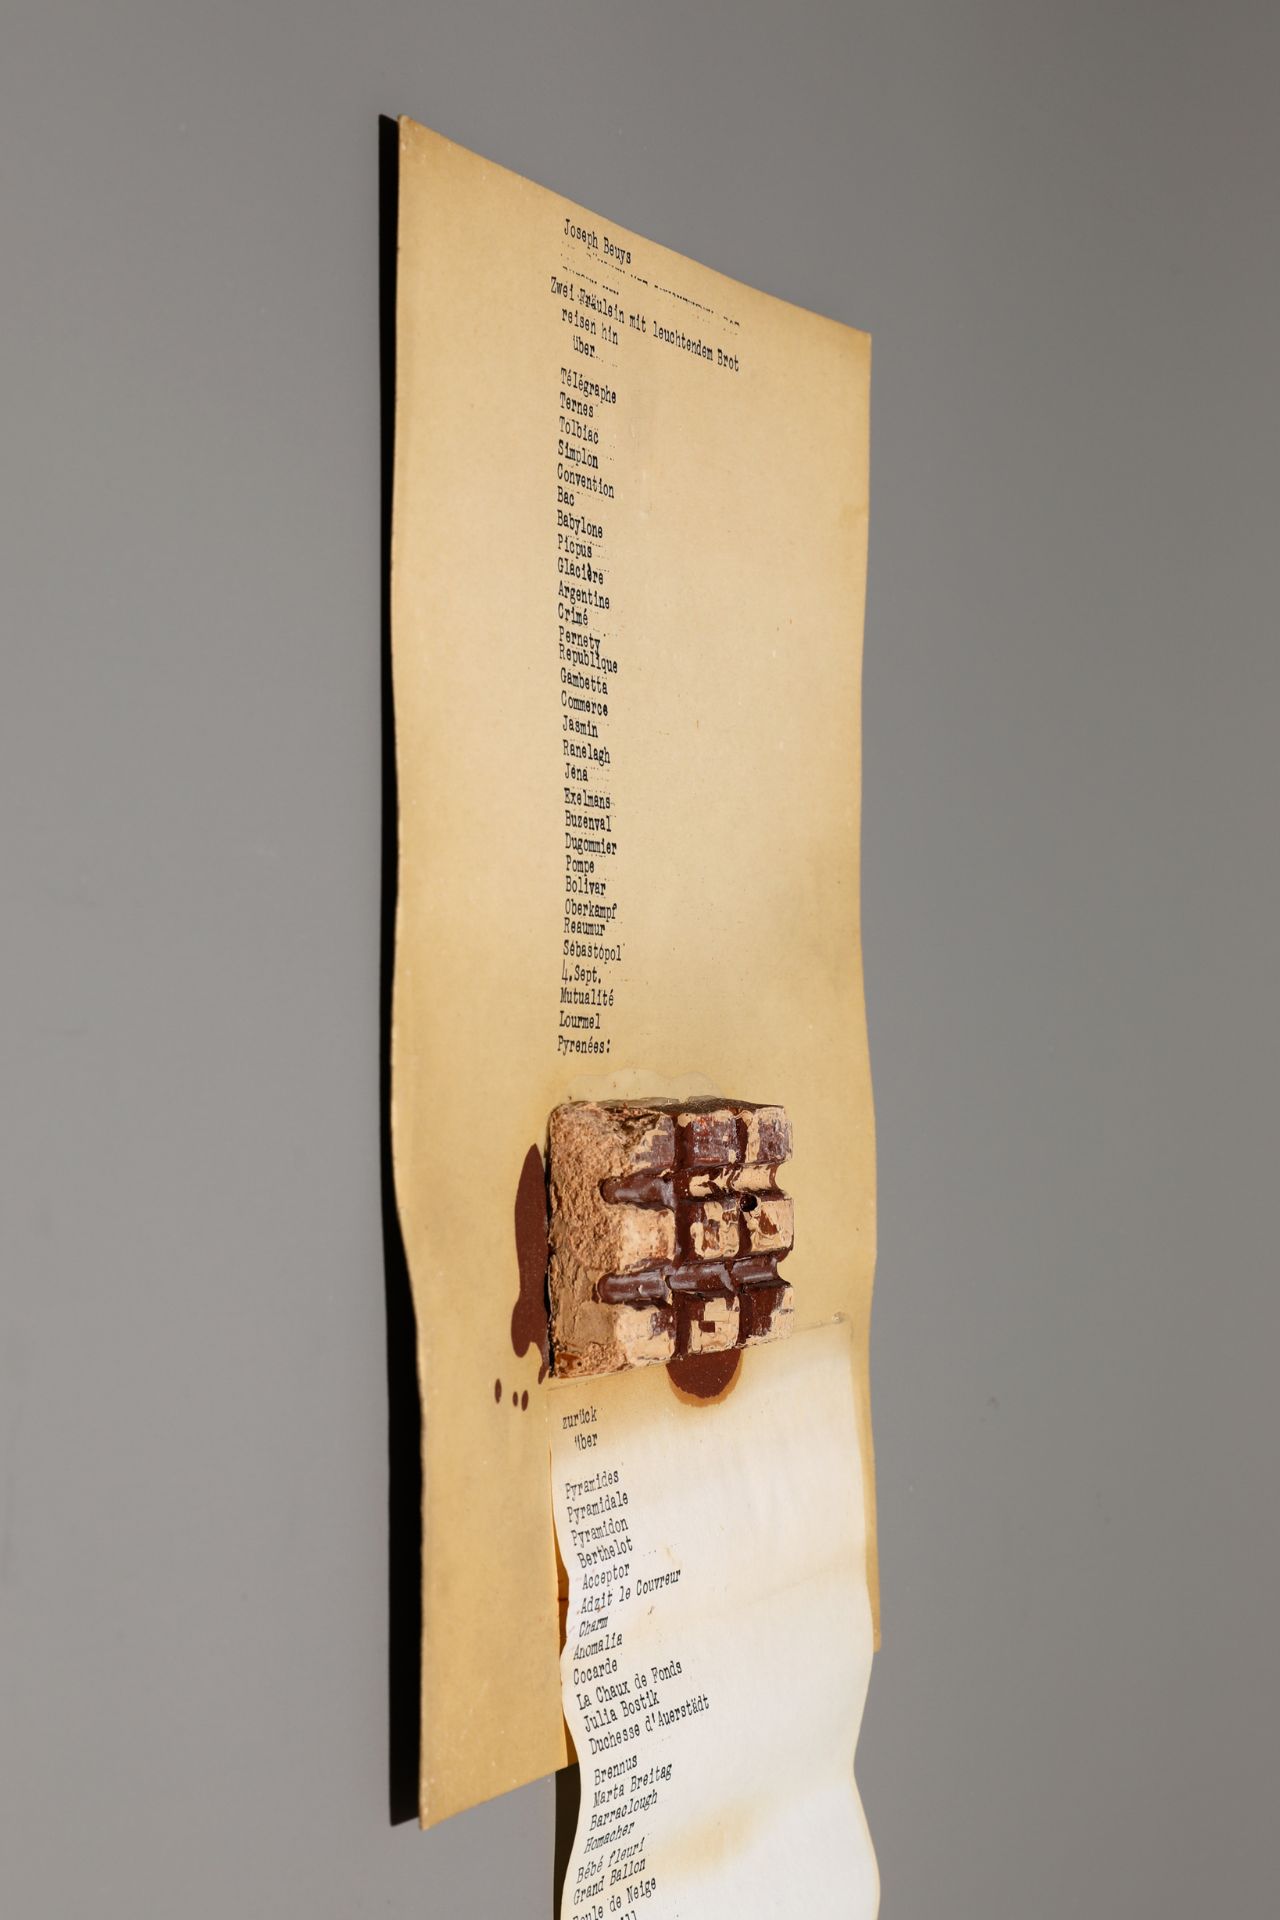 Joseph Beuys*, Mappe dé-coll/age 5, Zwei Fräulein mit Leuchtendem Brot, 1966 - Bild 2 aus 11